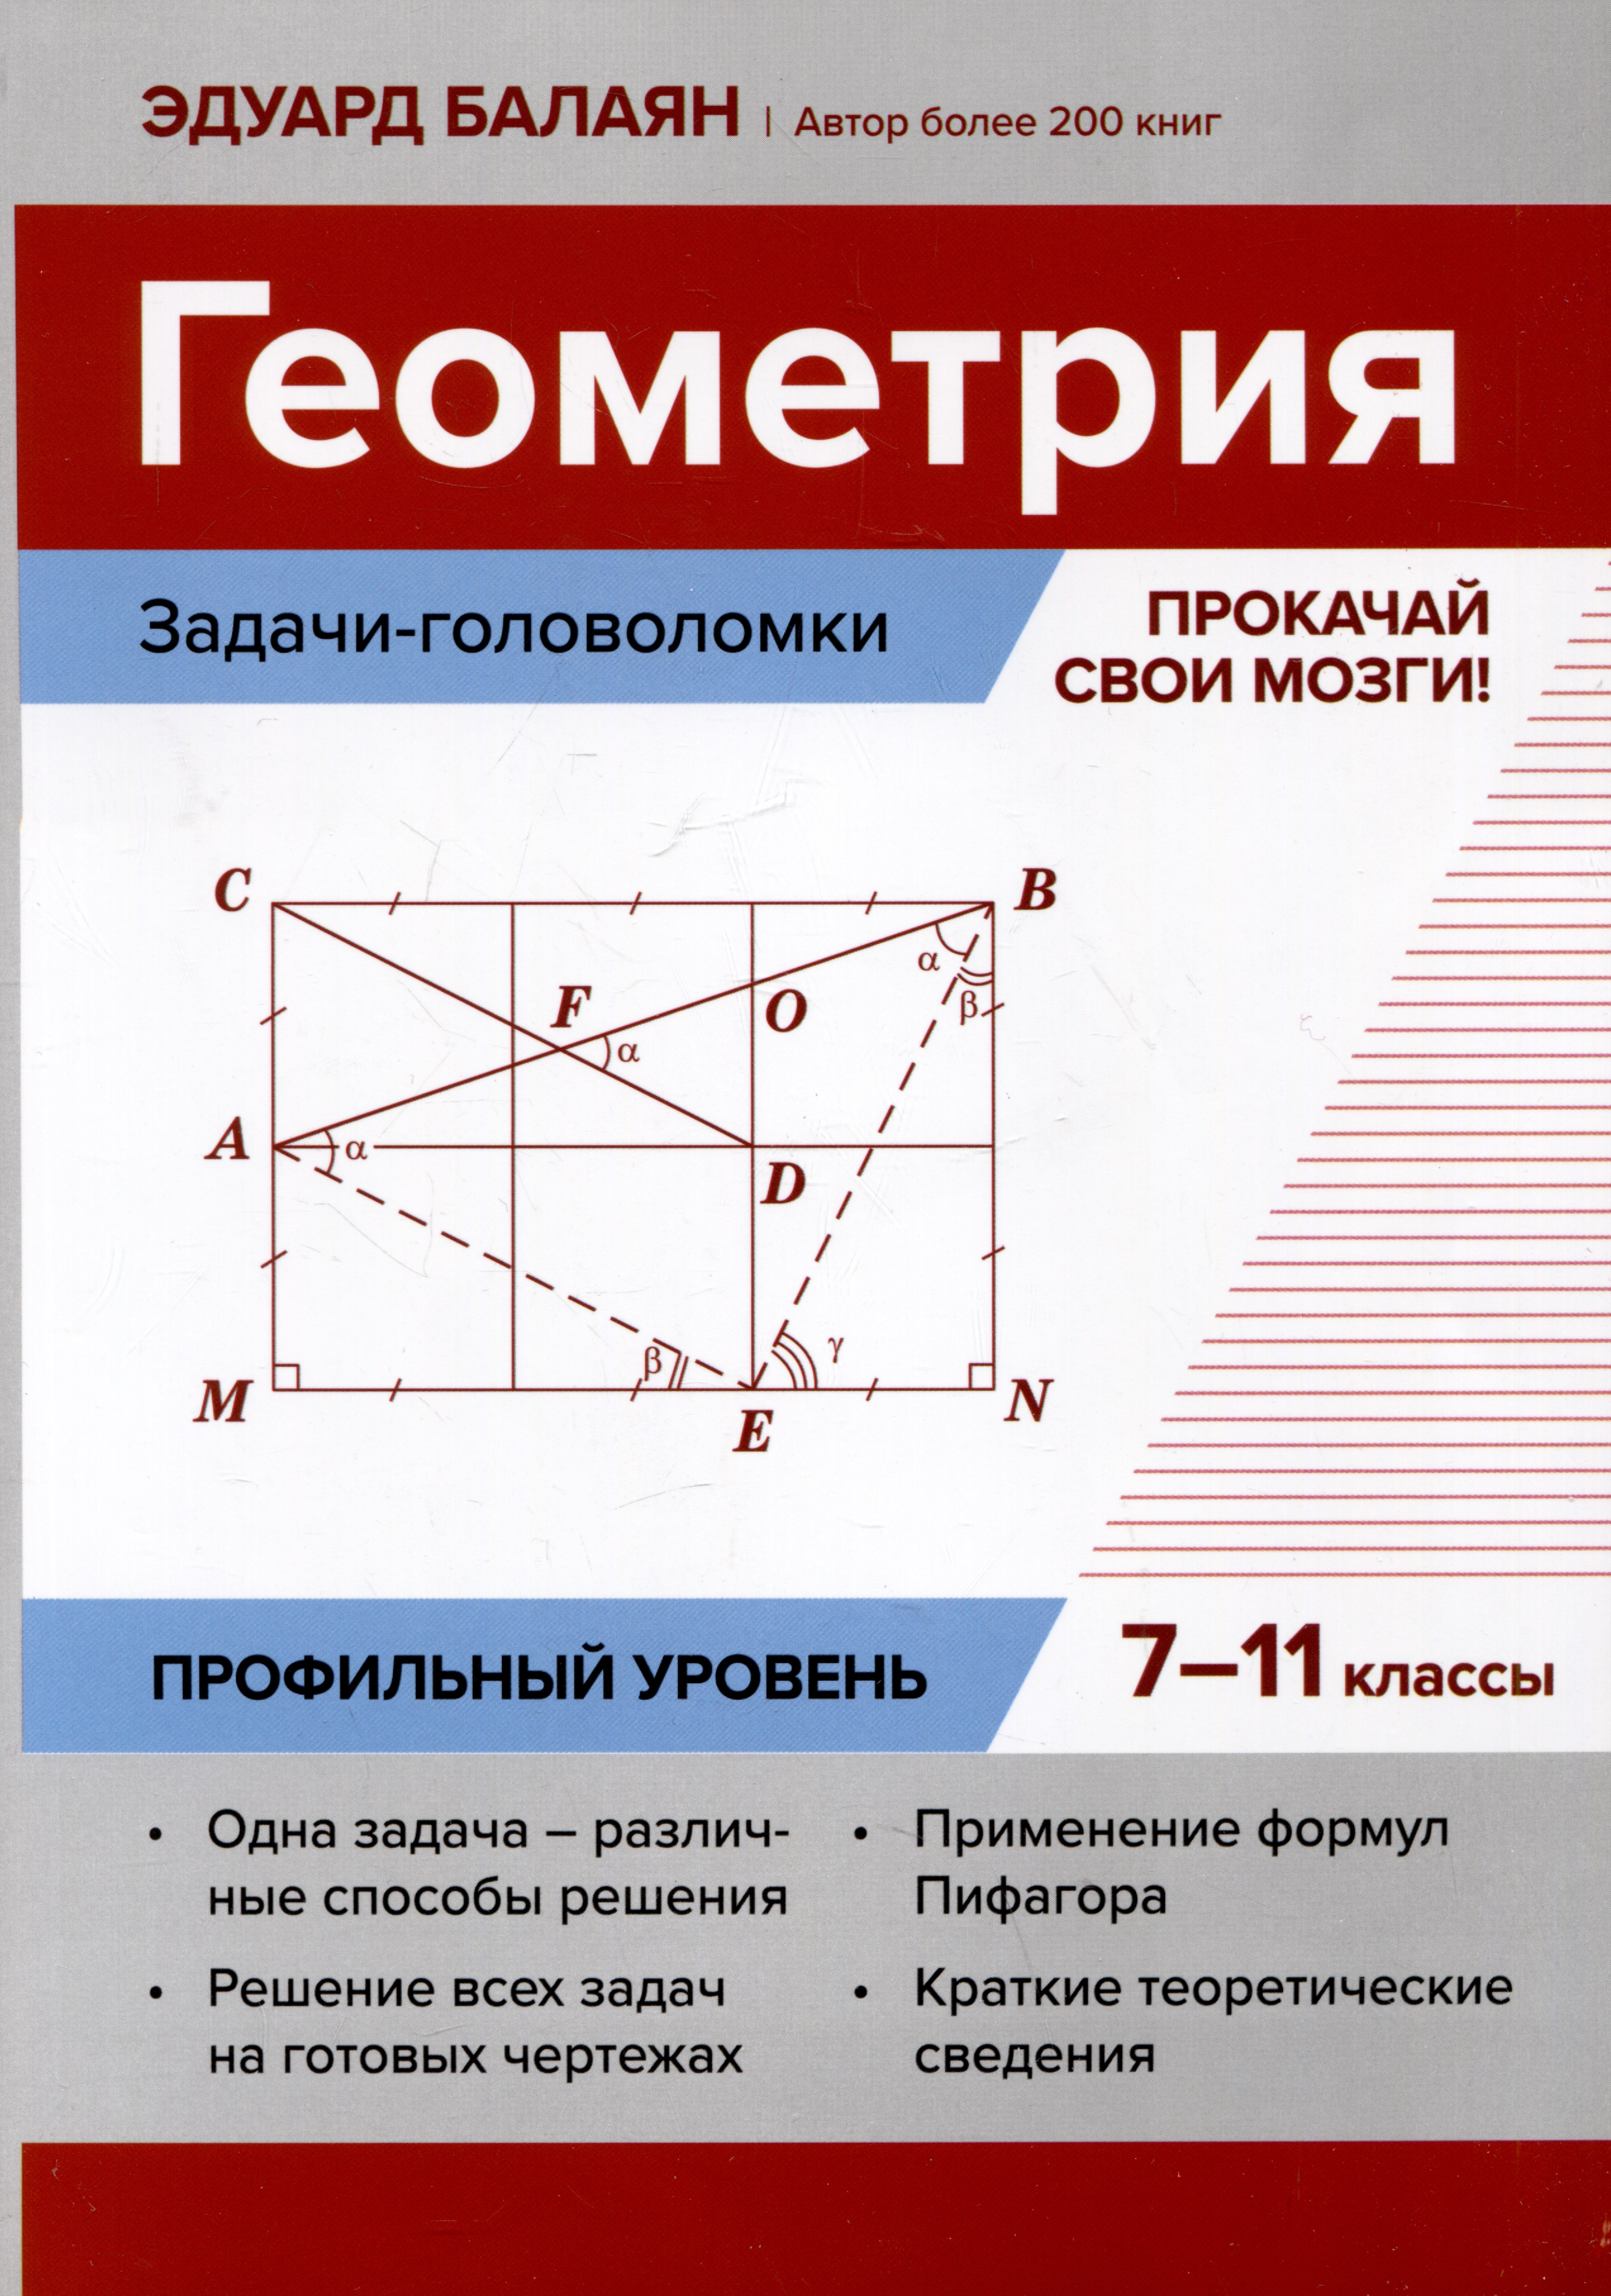 Балаян Эдуард Николаевич Геометрия: задачи-головоломки: прокачай свои мозги! 7-11 классы: профильный уровень